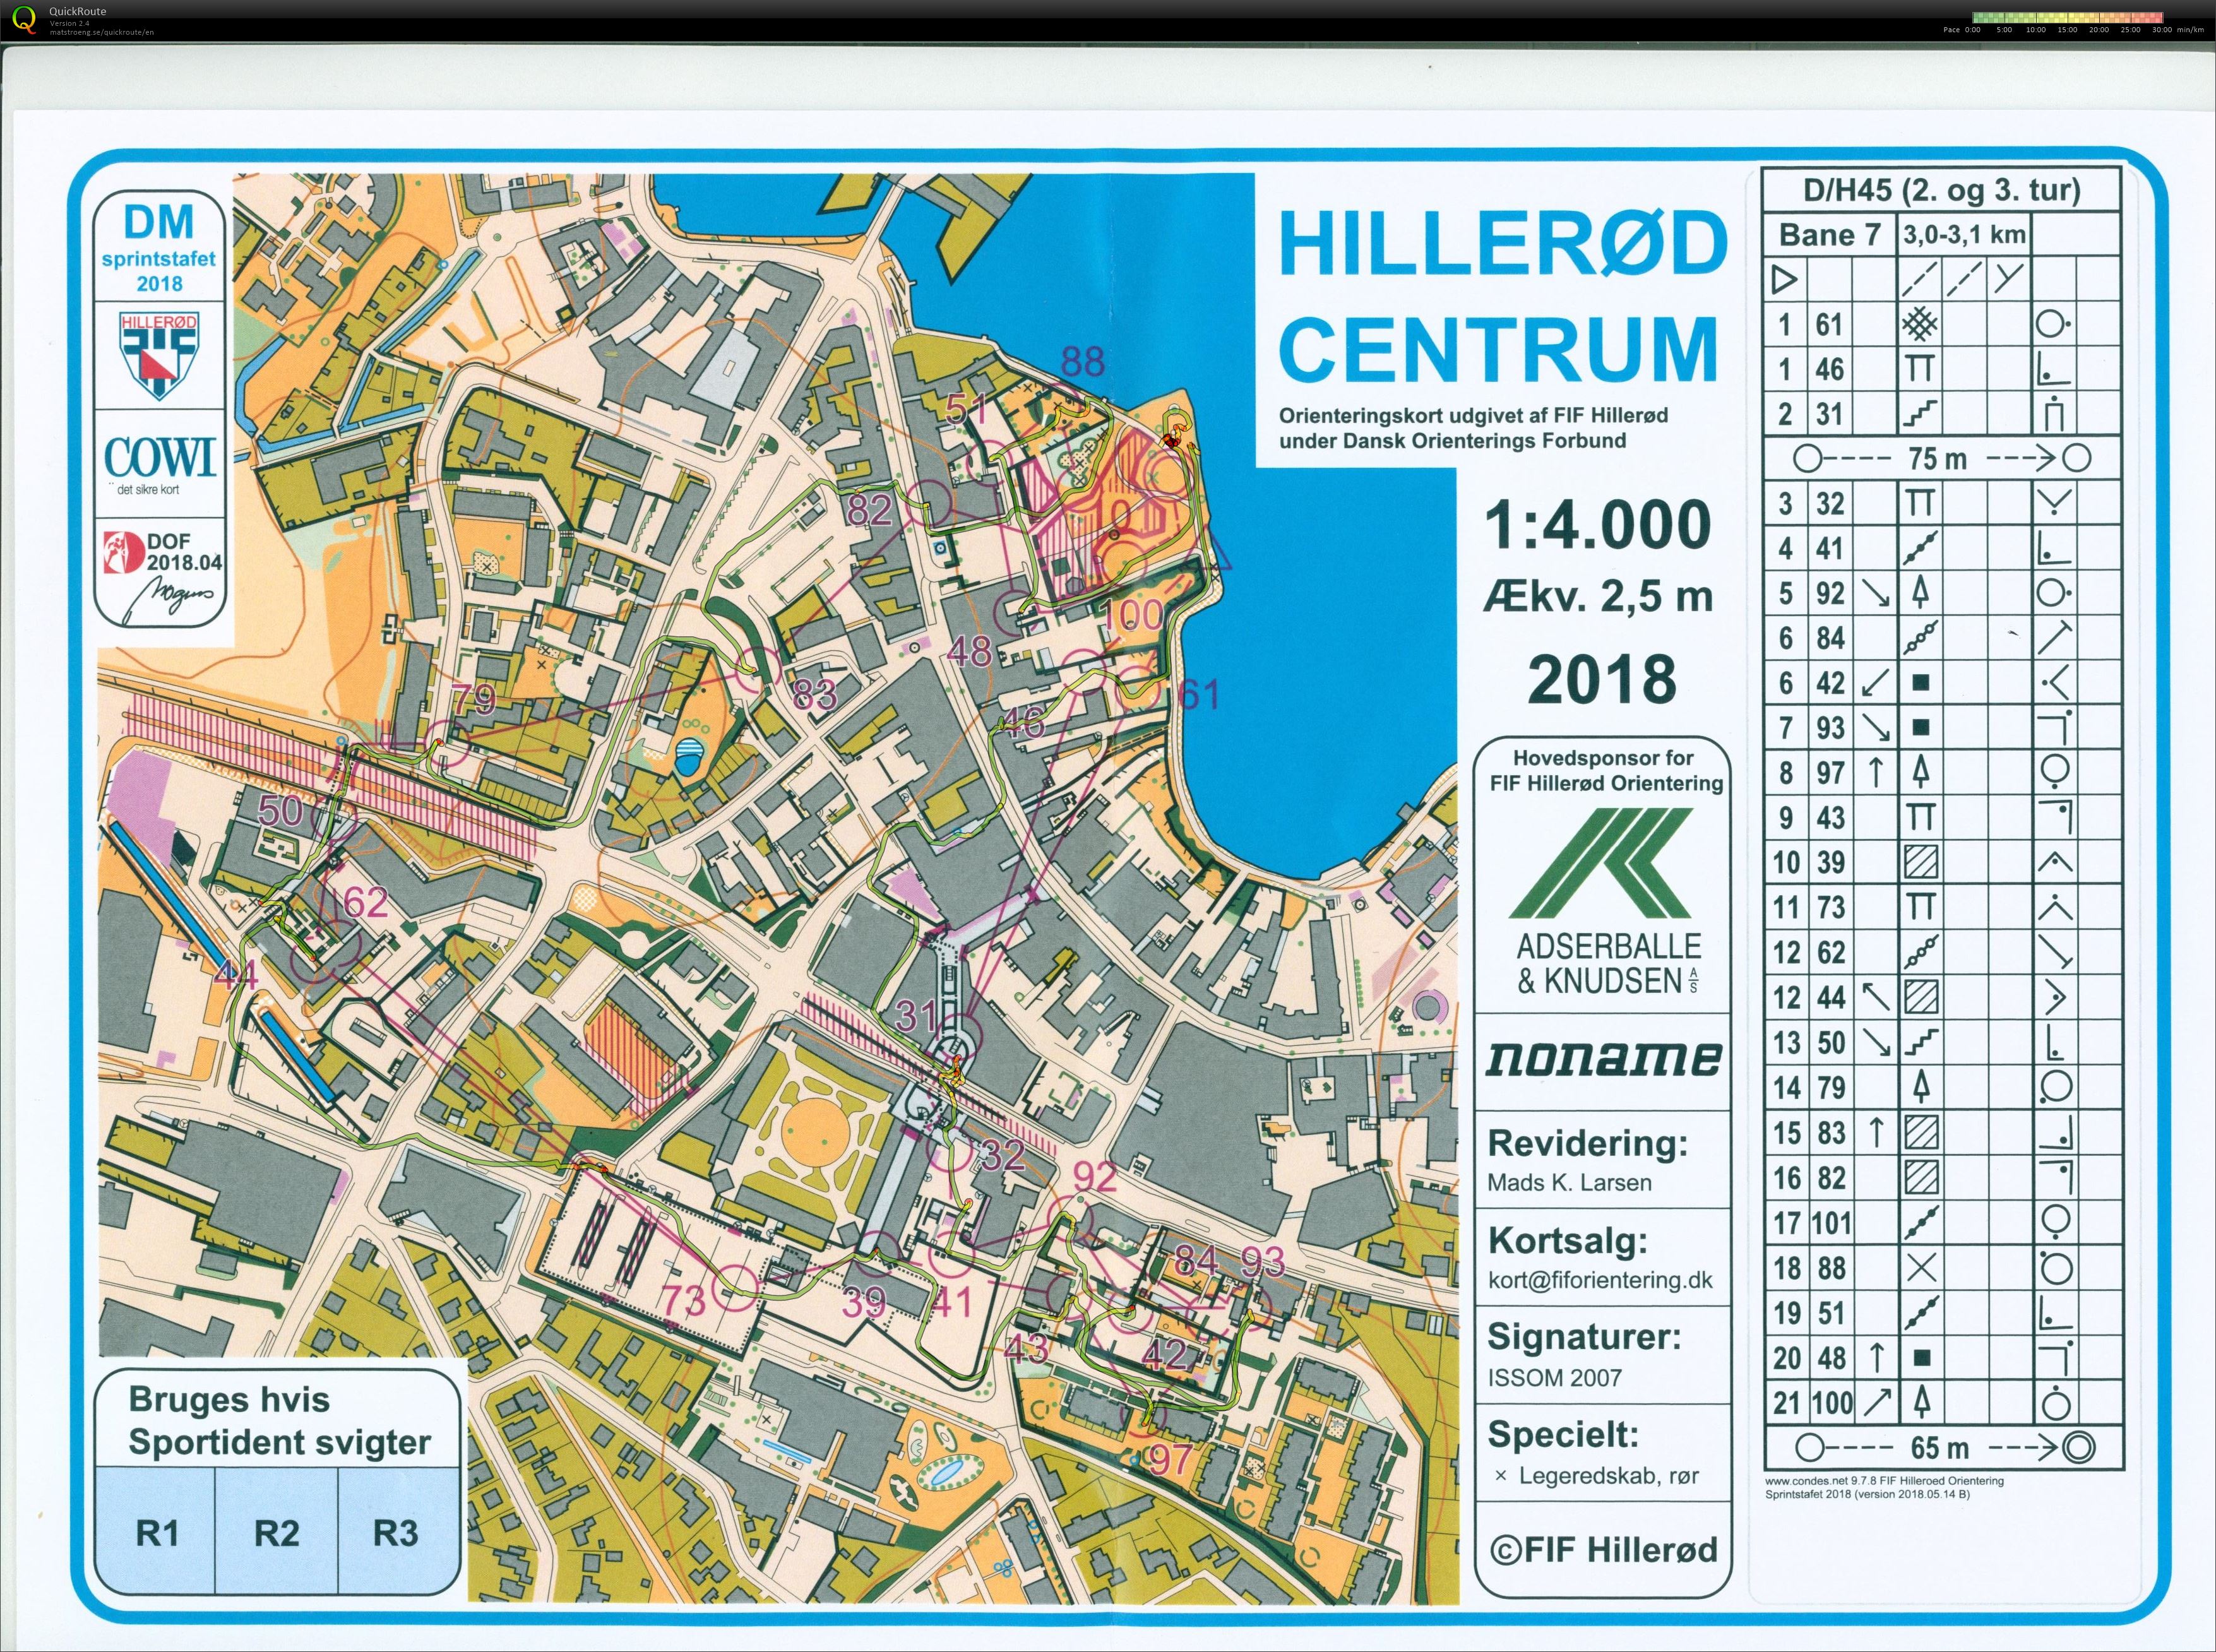 Hillerød sprint stafet D/H45 (27/05/2018)